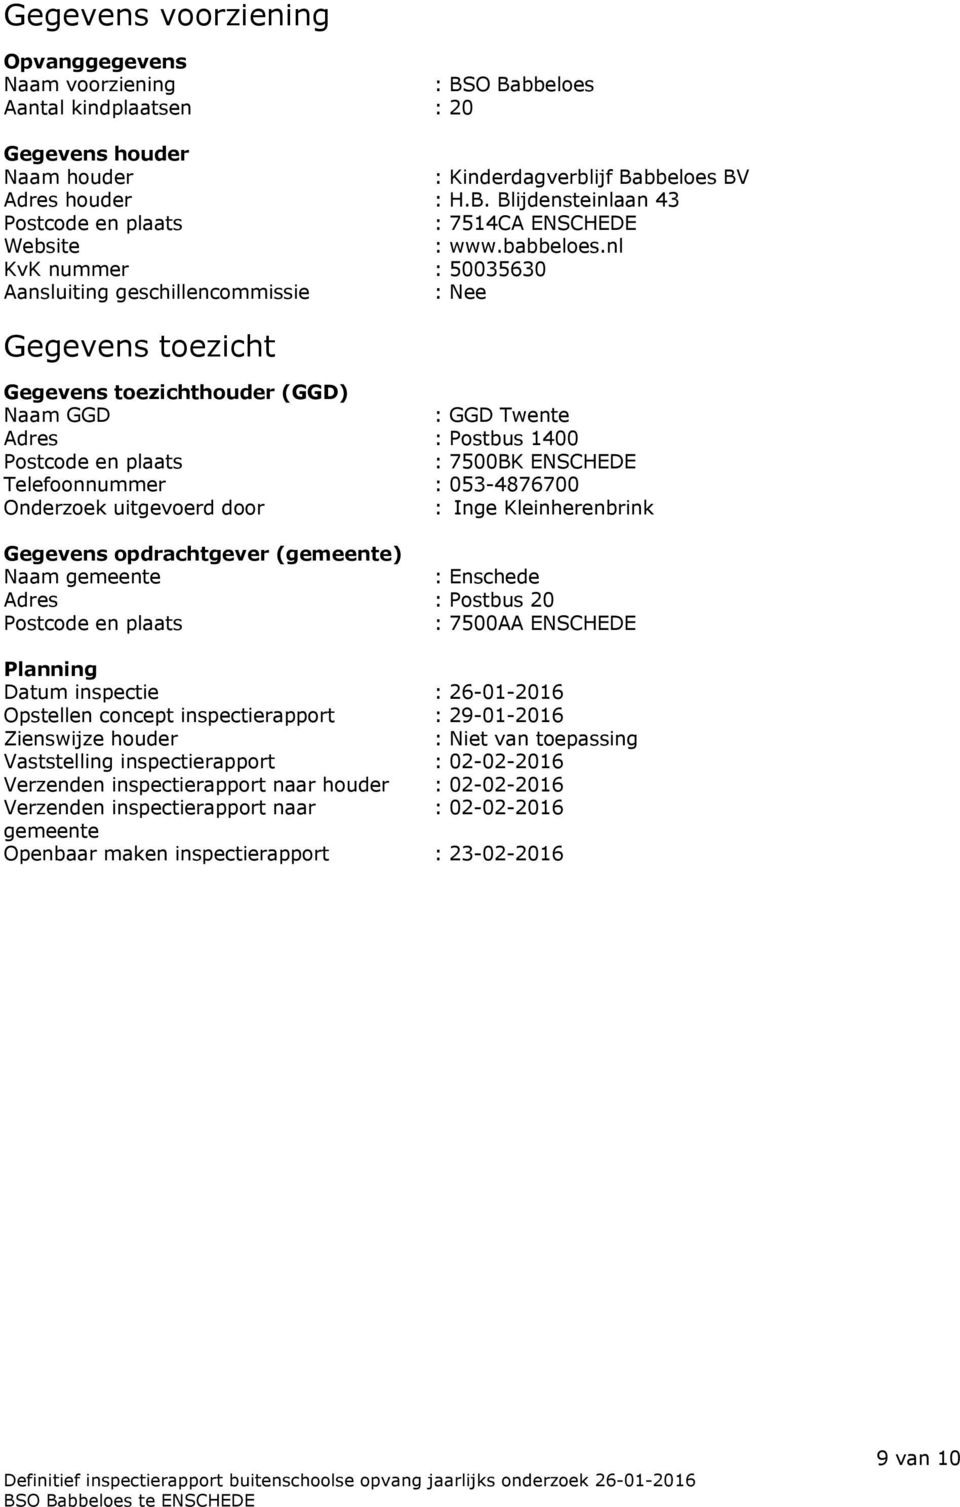 nl KvK nummer : 50035630 Aansluiting geschillencommissie : Nee Gegevens toezicht Gegevens toezichthouder (GGD) Naam GGD : GGD Twente Adres : Postbus 1400 Postcode en plaats : 7500BK ENSCHEDE